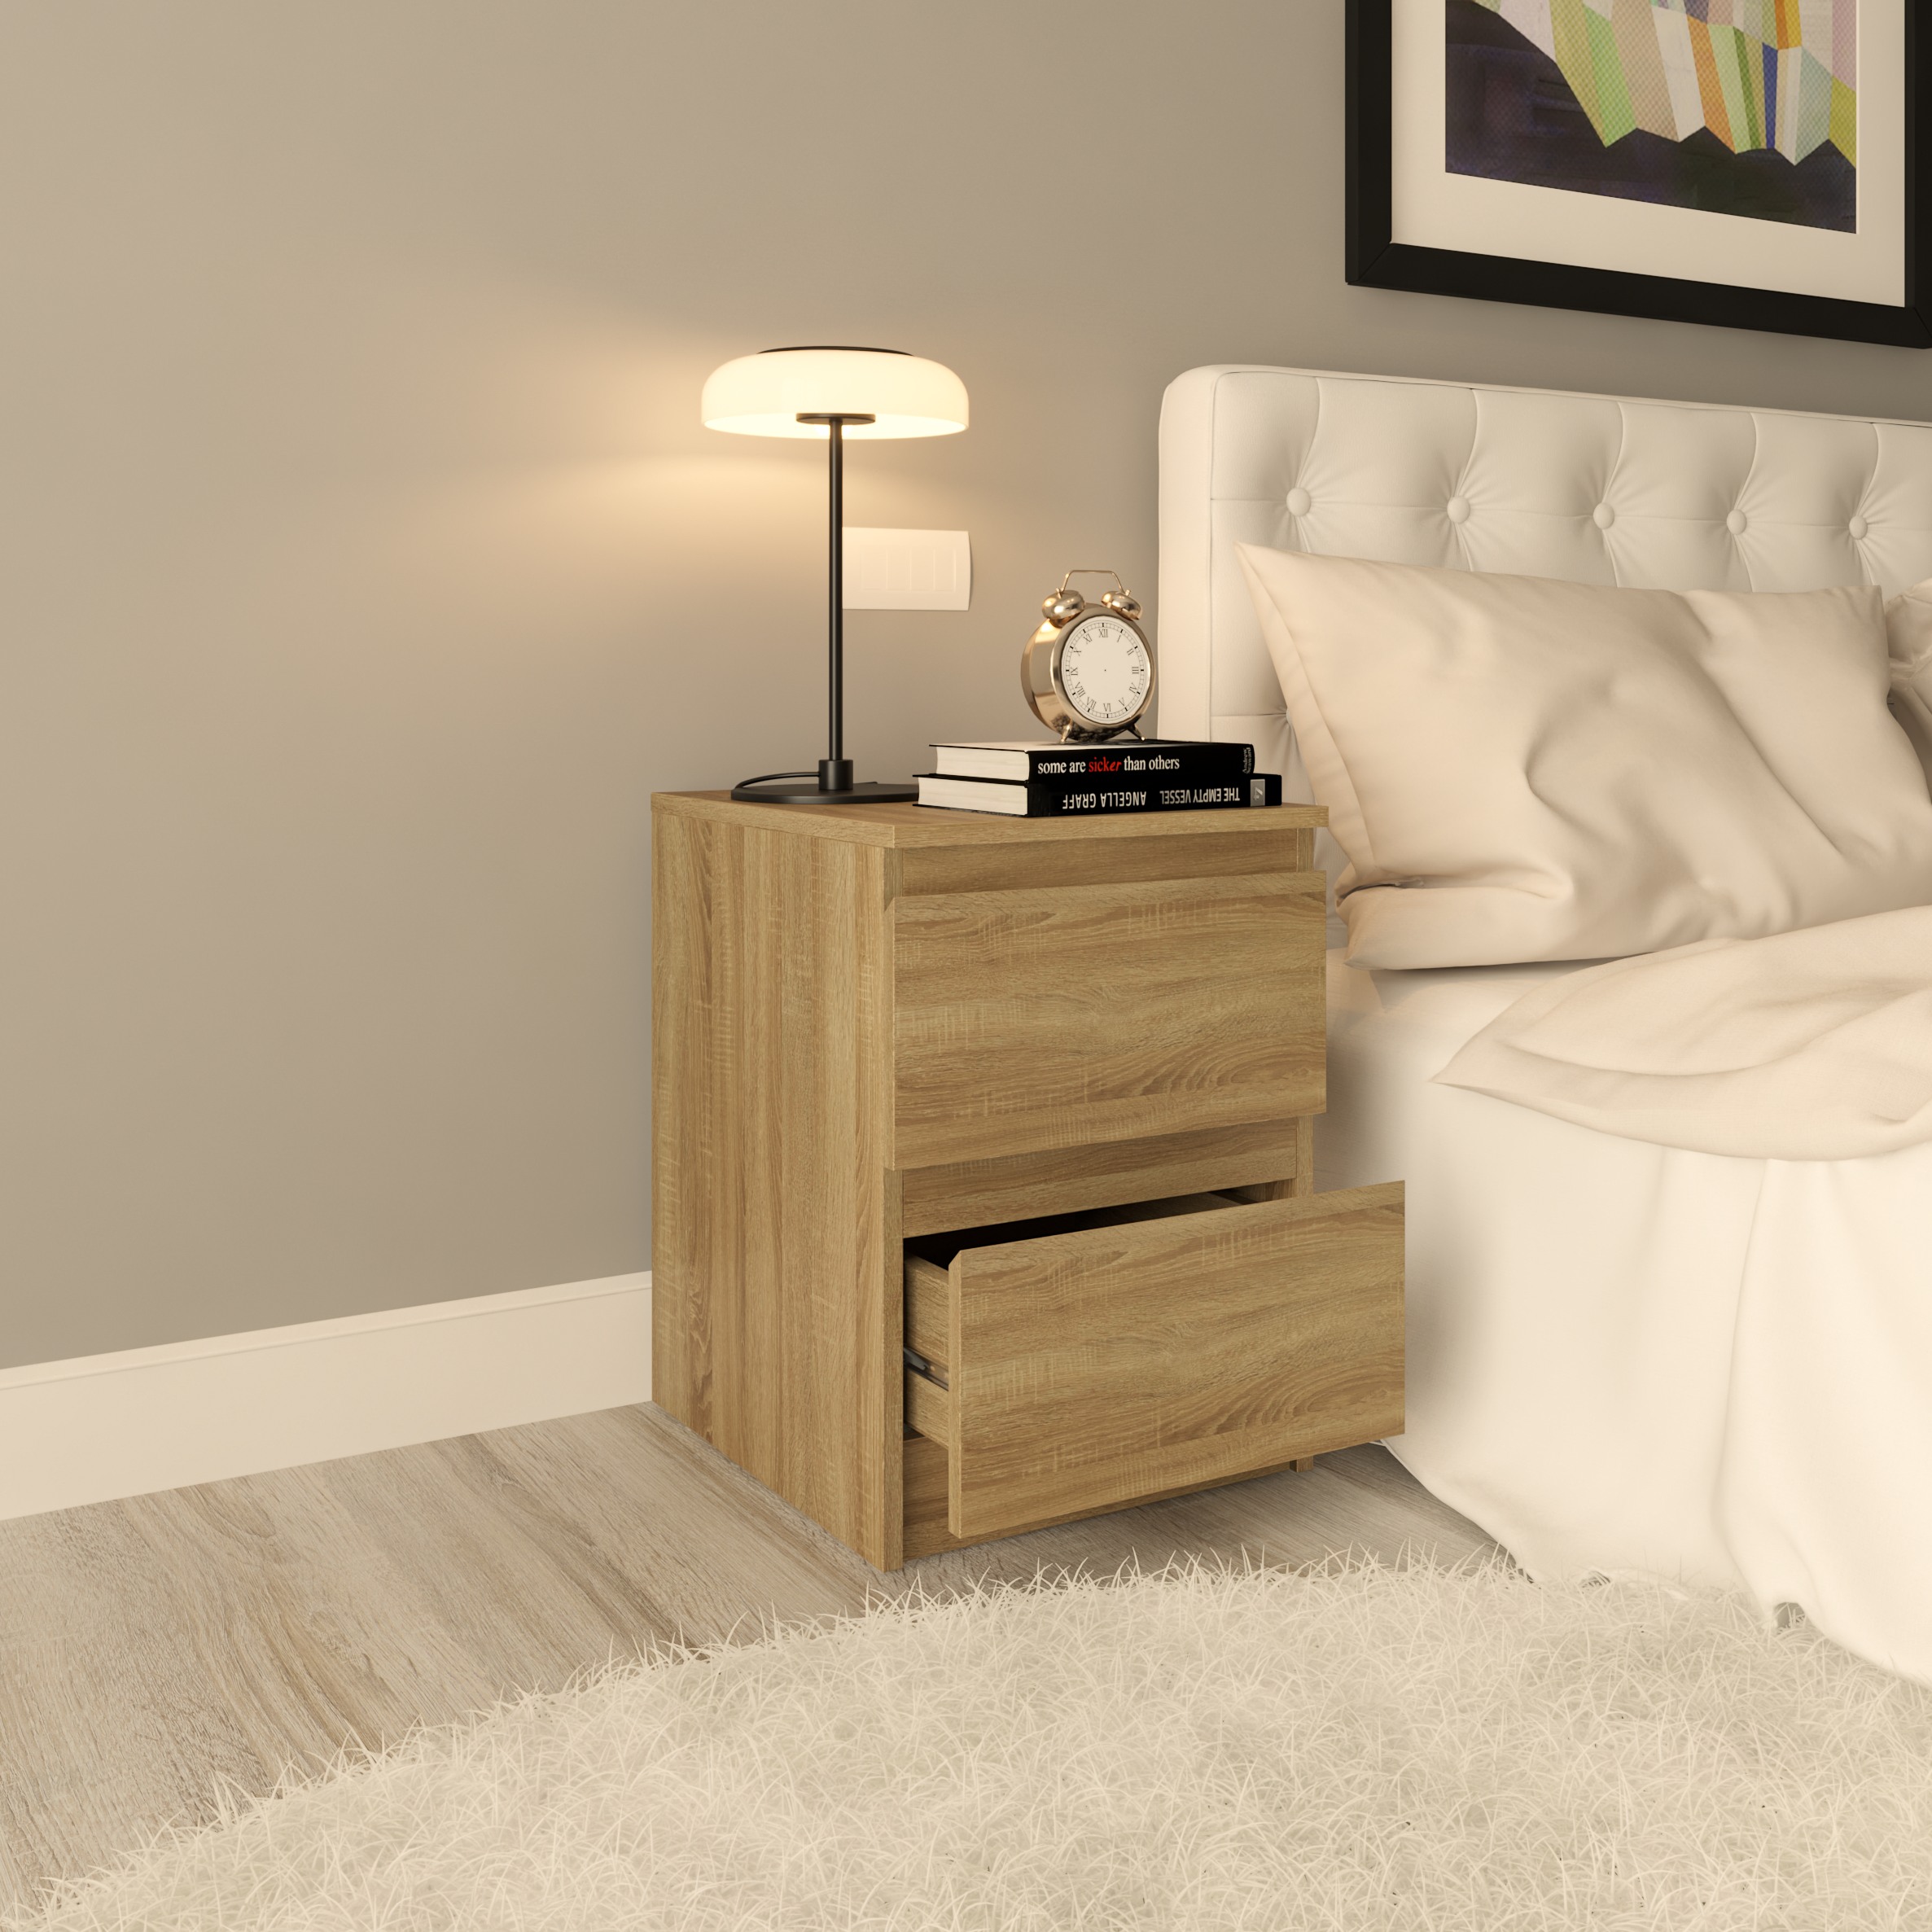 [Happy Home Furniture] DOOBIE,  Táp đầu giường  - 2 ngăn kéo ,  40cm x 48cm x 55cm ( DxRxC), THK_002